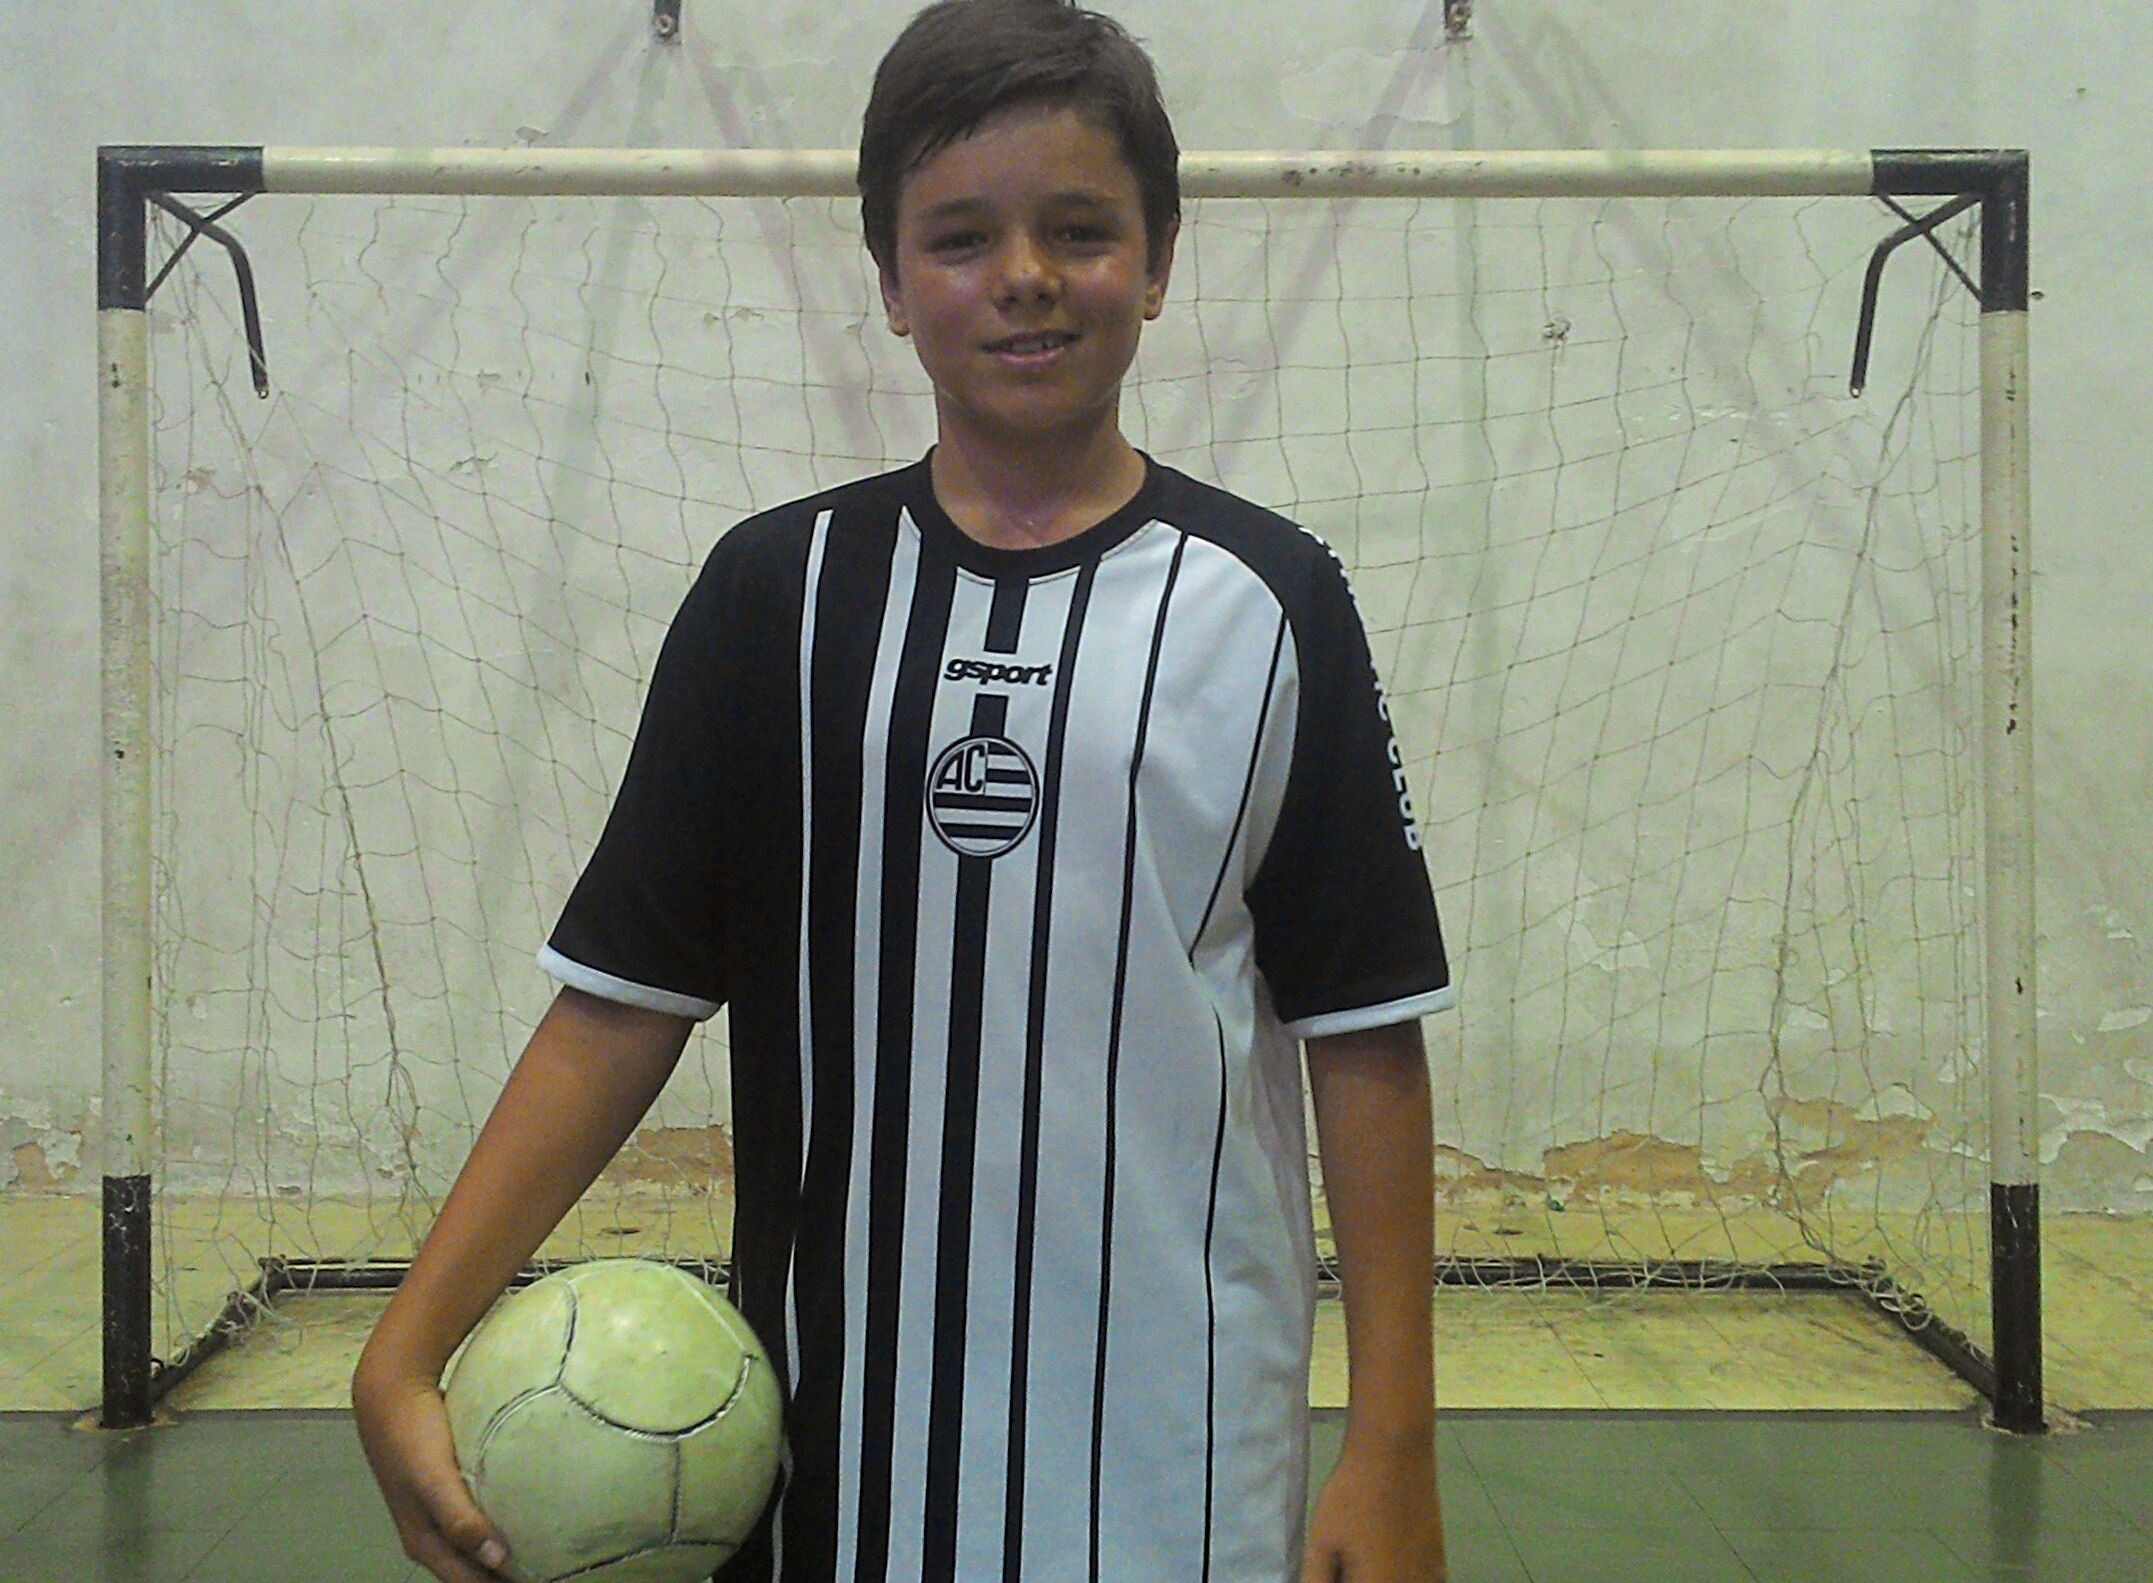 Quero ser atleta! – O sonho de ser jogador de futebol